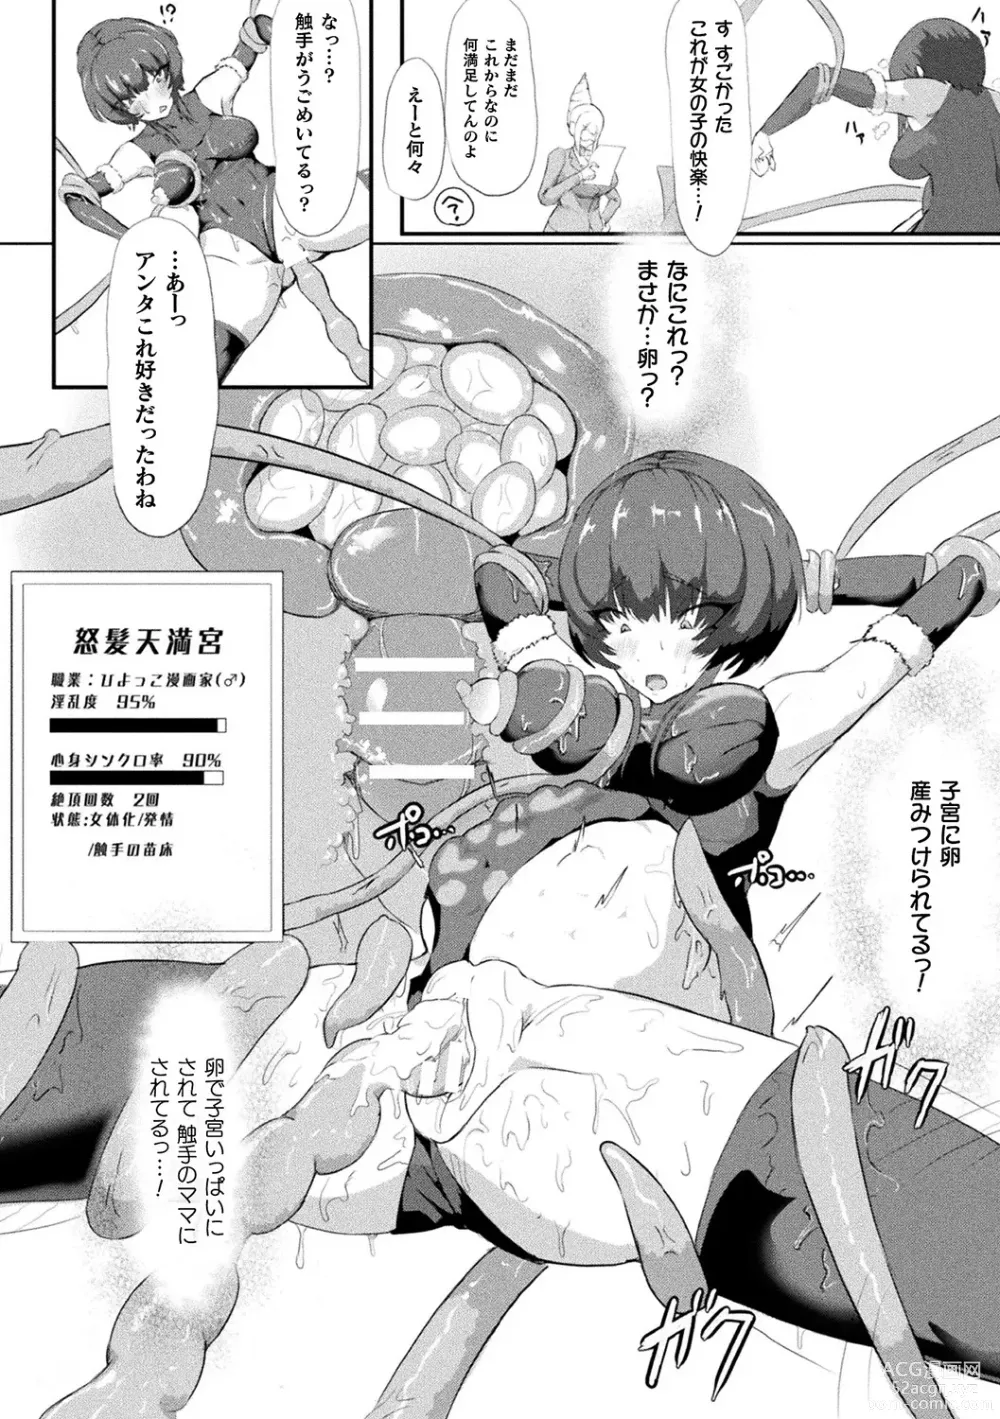 Page 96 of manga Bessatsu Comic Unreal AI ni Wakaraserareru Jinrui Hen Vol. 2